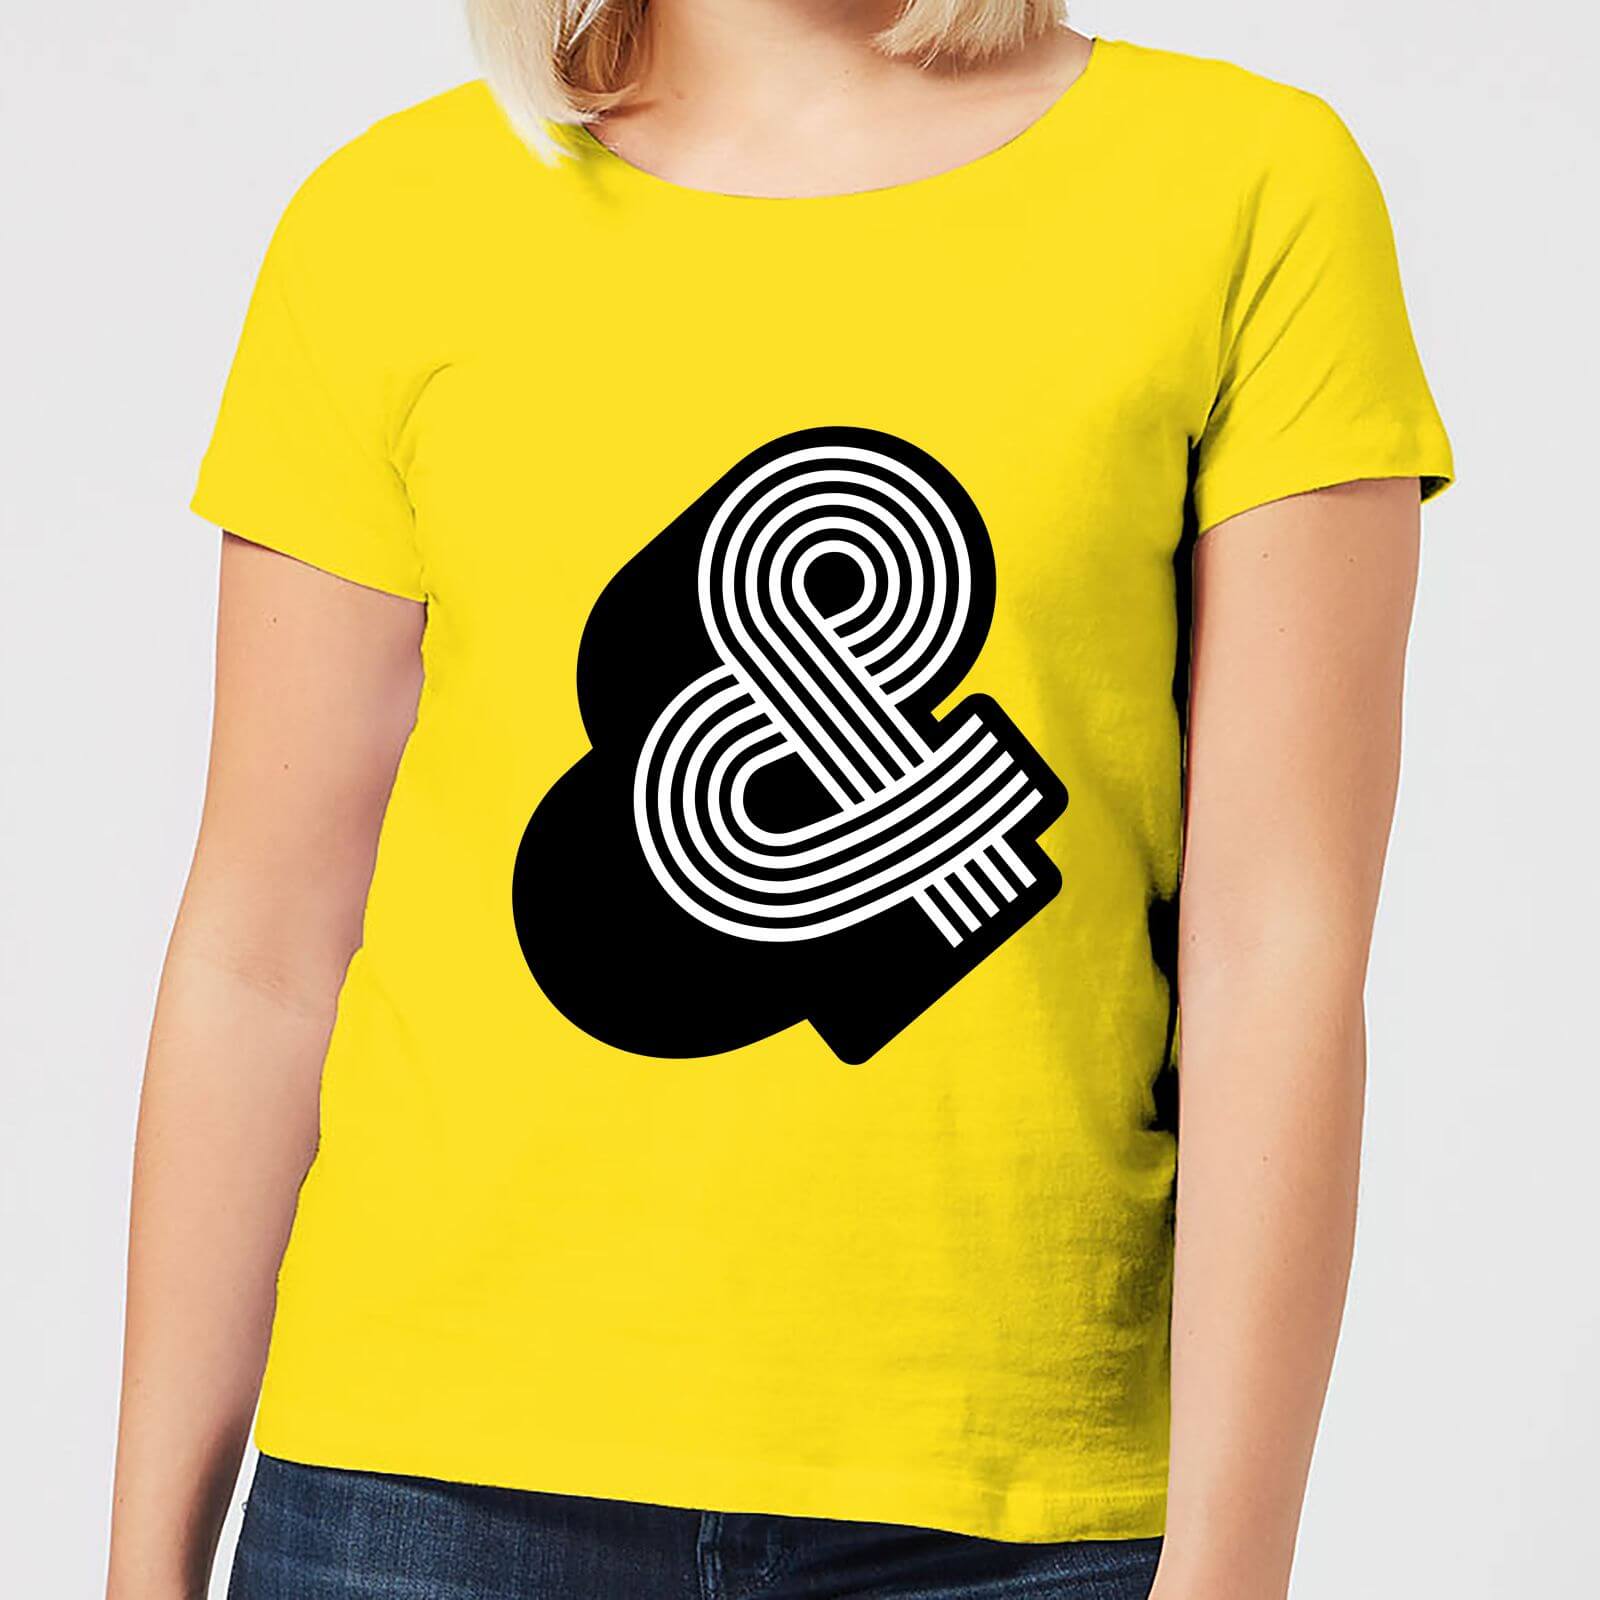 The Motivated Type Line Art & Women's T-Shirt - Yellow - S - Yellow